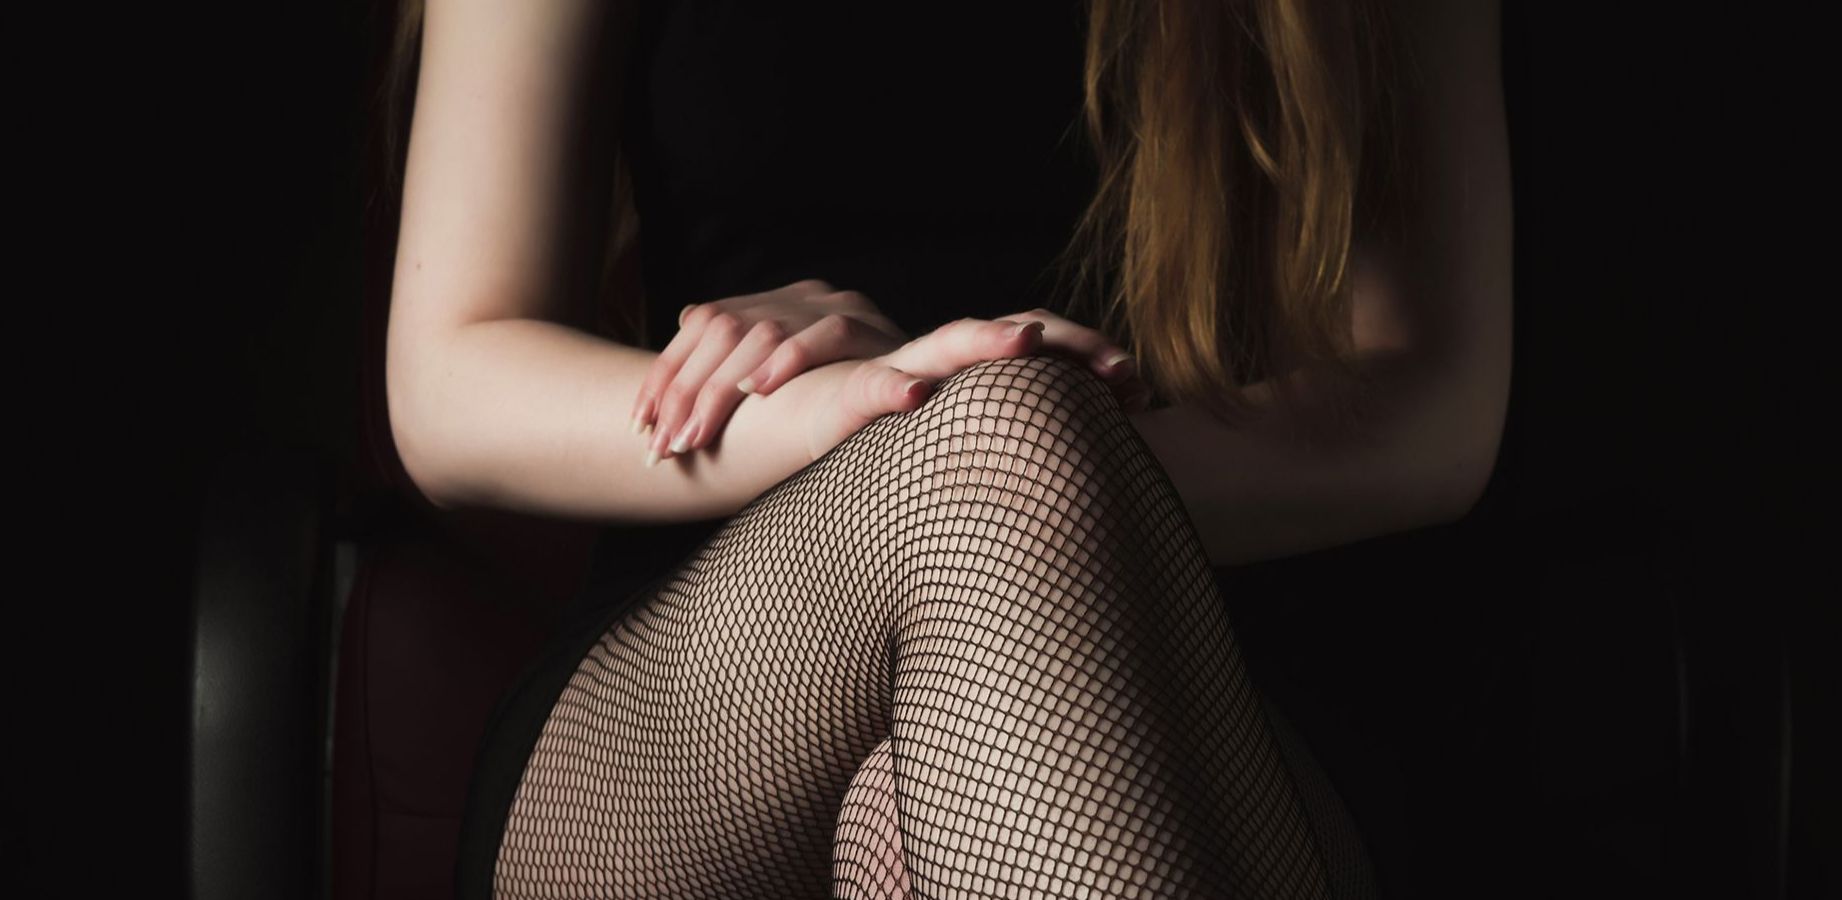 Domina Telefonsex - Abbildung einer Frau in schwarzem Kleid und Netzstrumpfhose mit überschlagenen Beinen